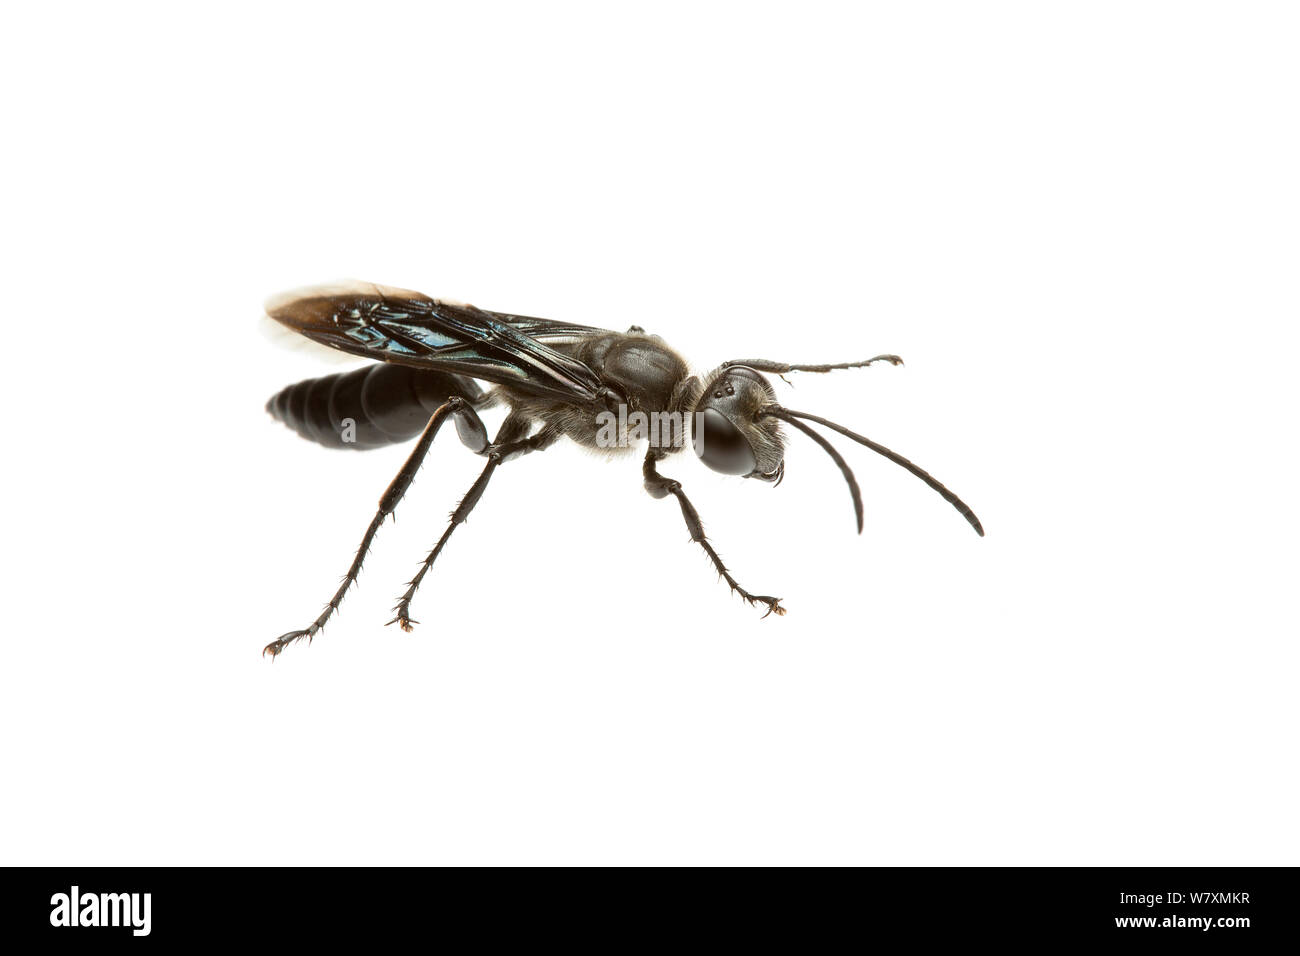 Black Digger Wasp (Sphex cognatus) Mine d'or, plutoniques Meekatharra Shire, Gascoyne Bioregion, ouest de l'Australie. Projet d'Meetyourneighbtous.net Banque D'Images